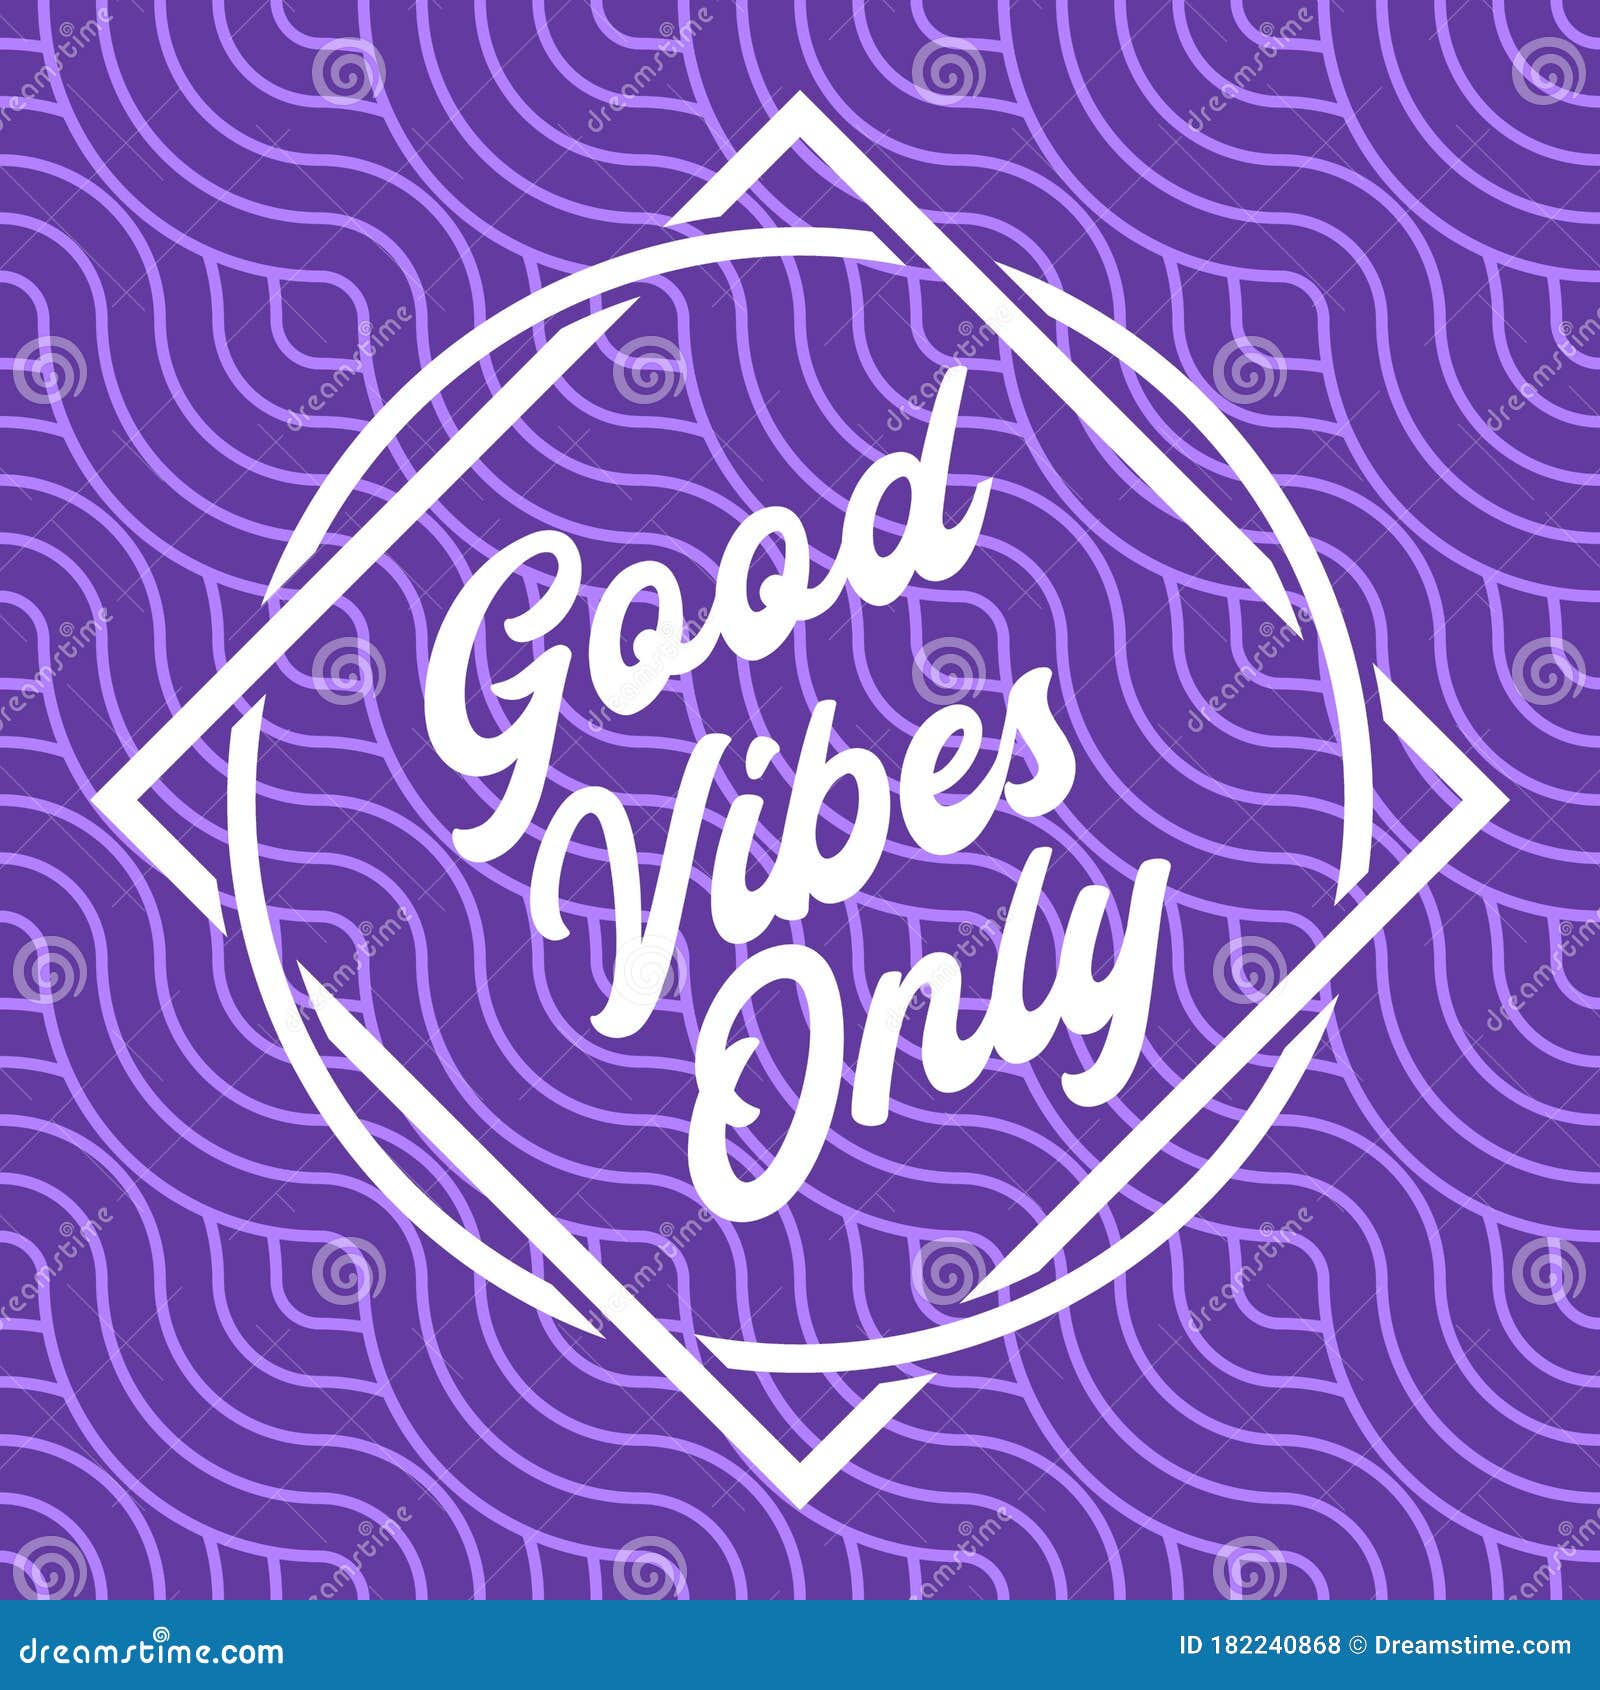 Bạn muốn tăng thêm năng lượng tích cực mỗi ngày? Hãy ngắm nghía hình nền tím mang tia Good Vibes này, với những sắc màu tươi sáng và bắt mắt, chắc chắn sẽ khiến tâm trạng của bạn thăng hoa.